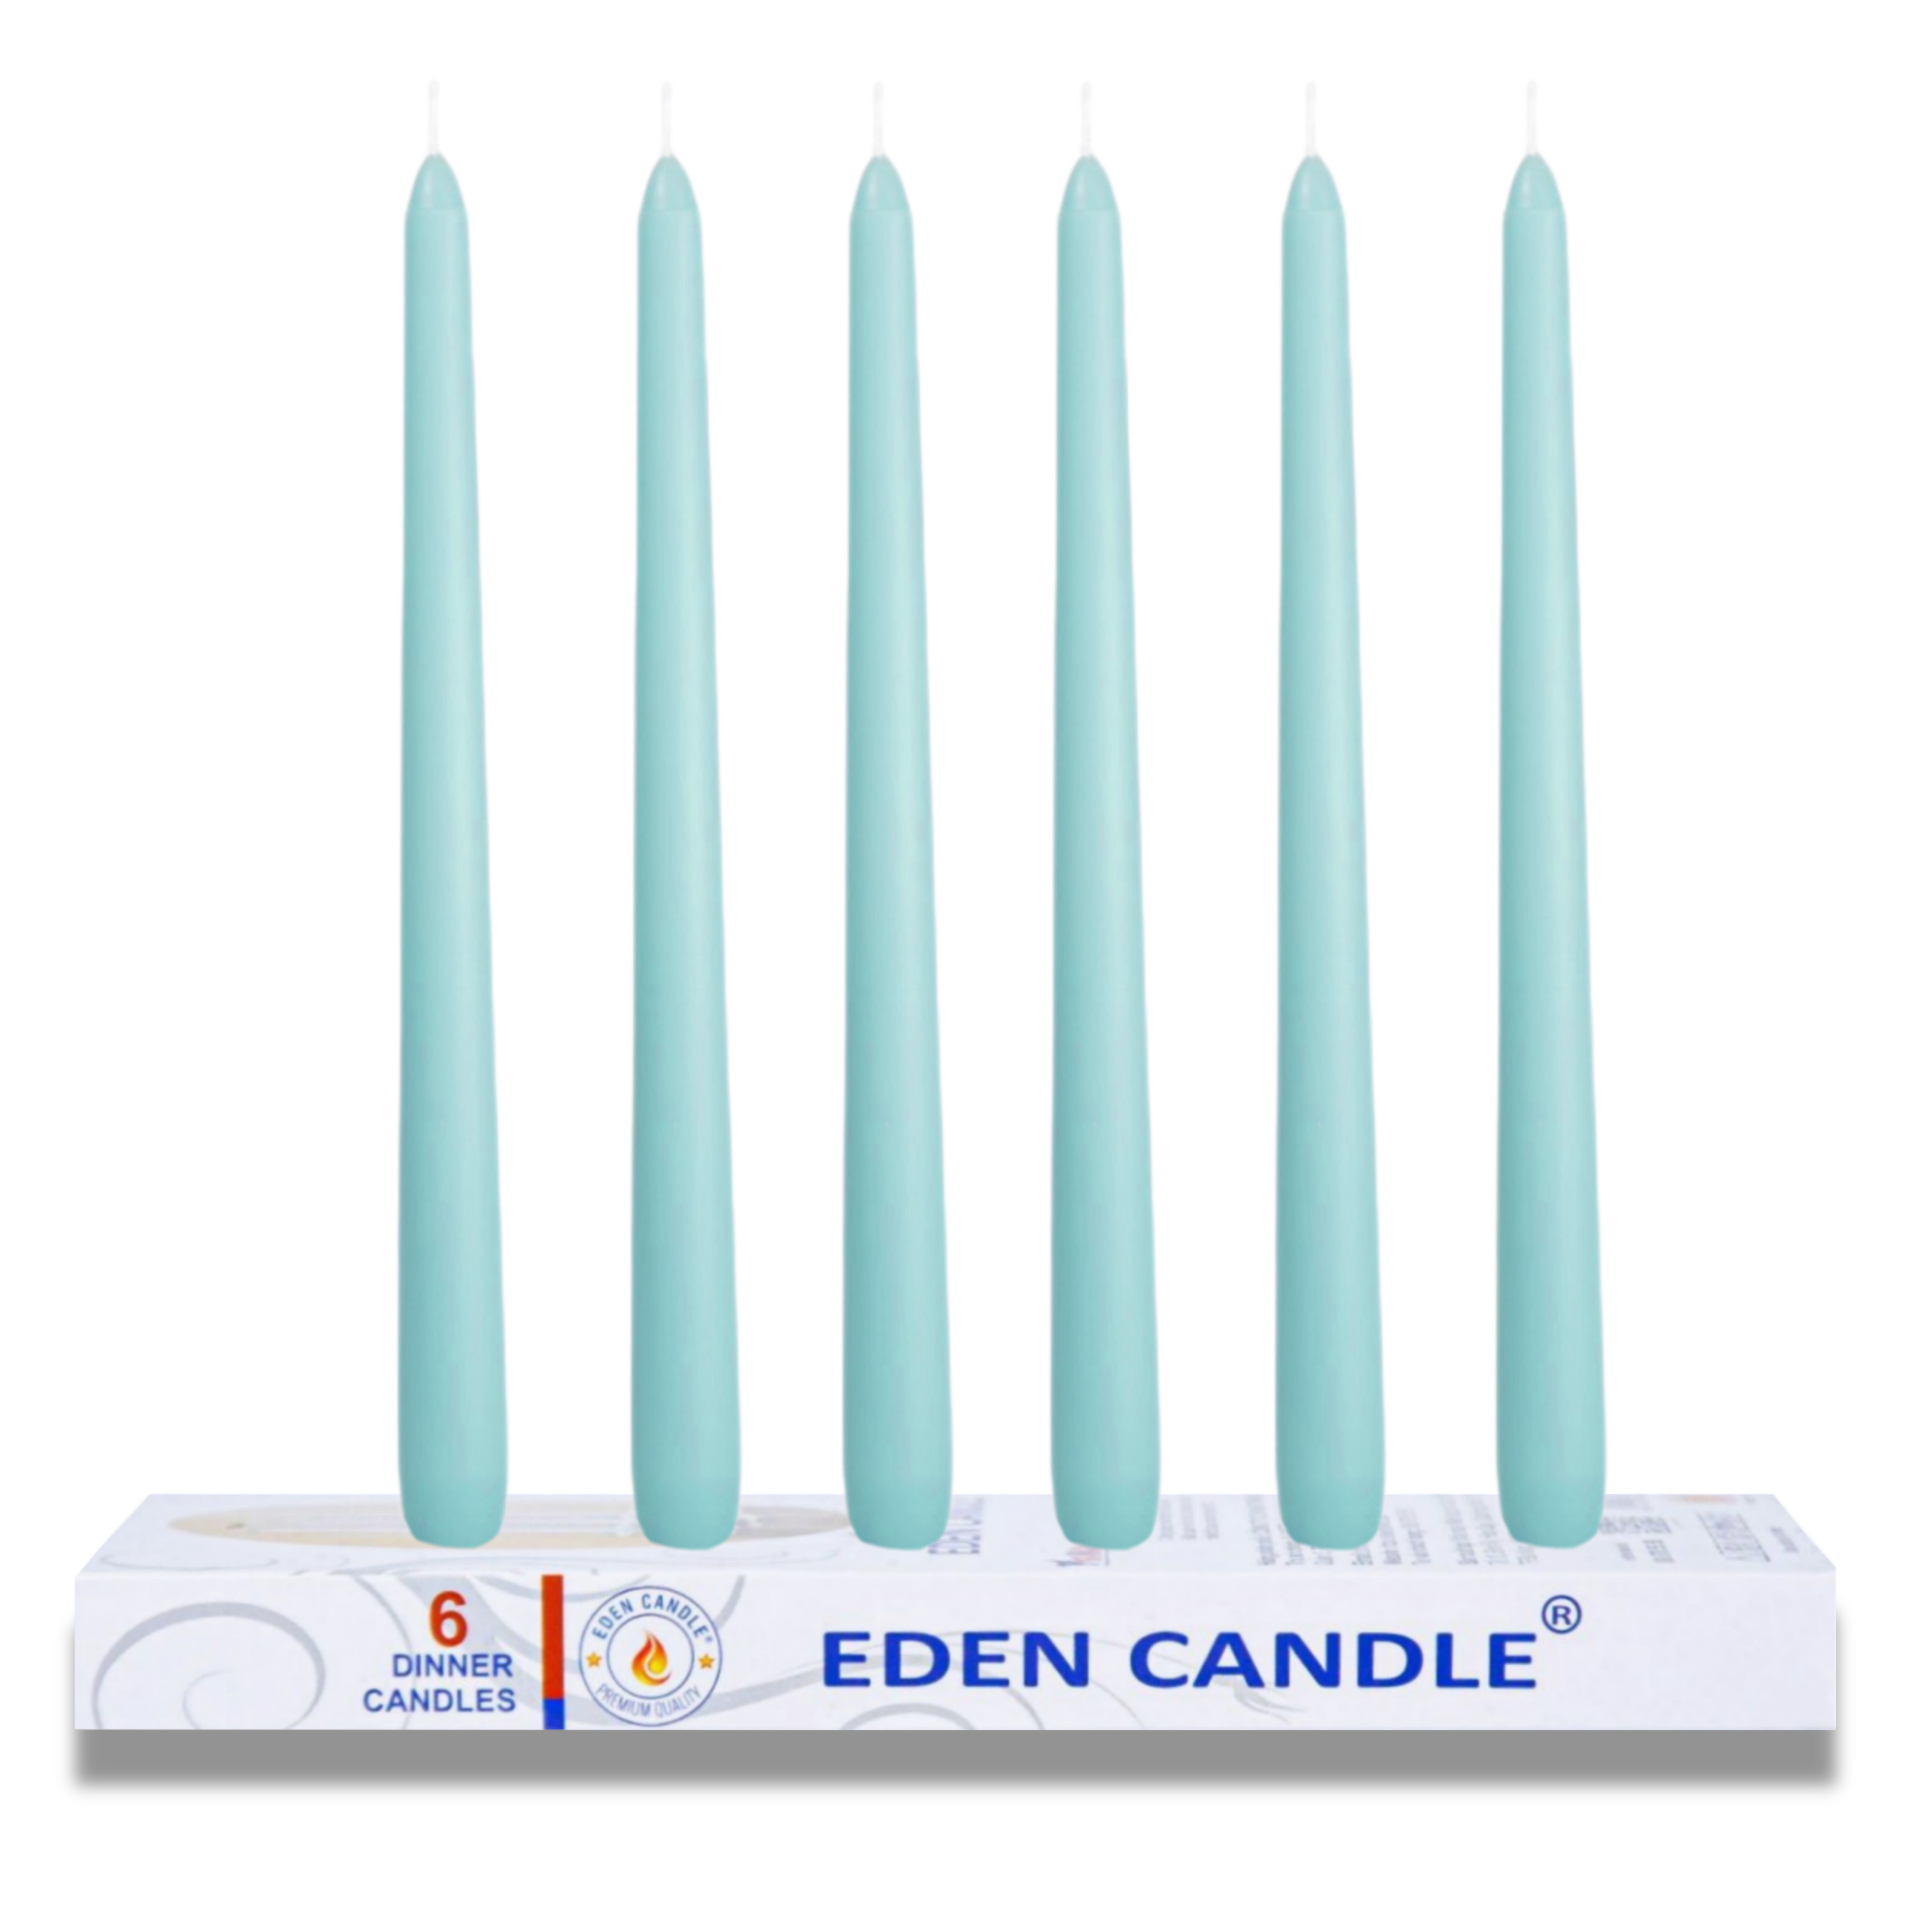 [Hộp 6 nến] Nến thơm taper Eden Candle FTRAMART EDC2331 (Xanh ngọc), cao 25 cm, phù hợp tất cả các chân nến theo tiêu chuẩn nến taper